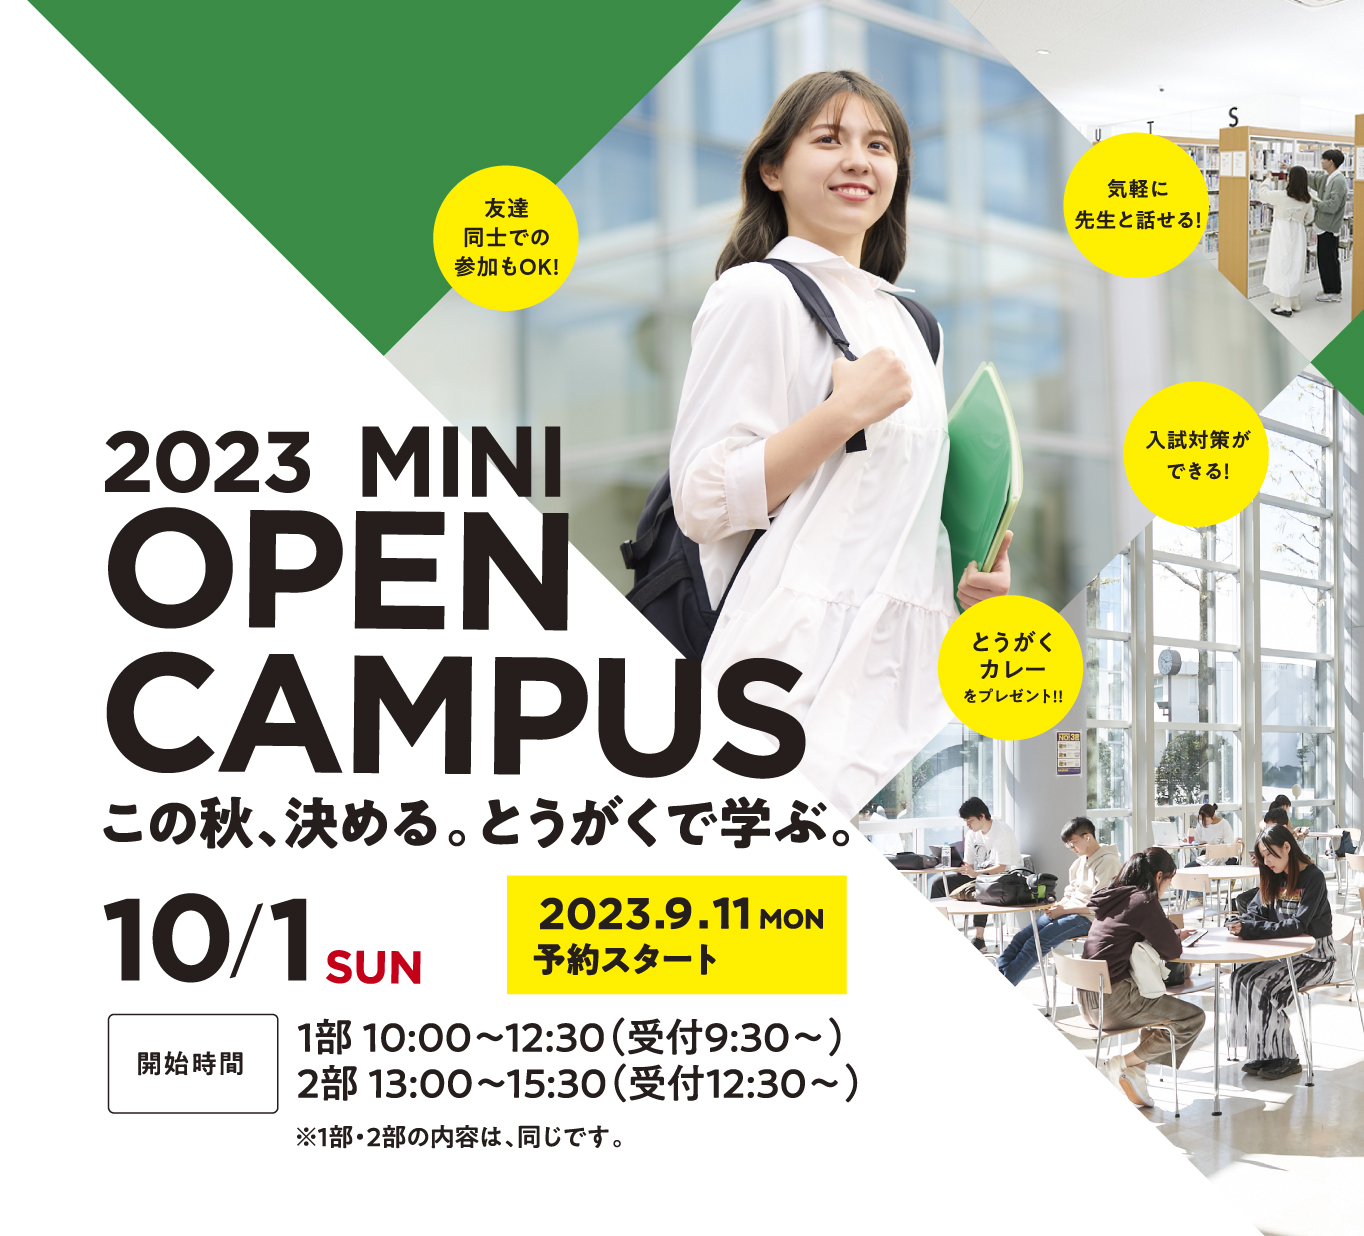 オープンキャンパス2023 9月11日月曜日、来場予約スタート！ 10月1日日曜日、名古屋キャンパスと三好キャンパスにて開催